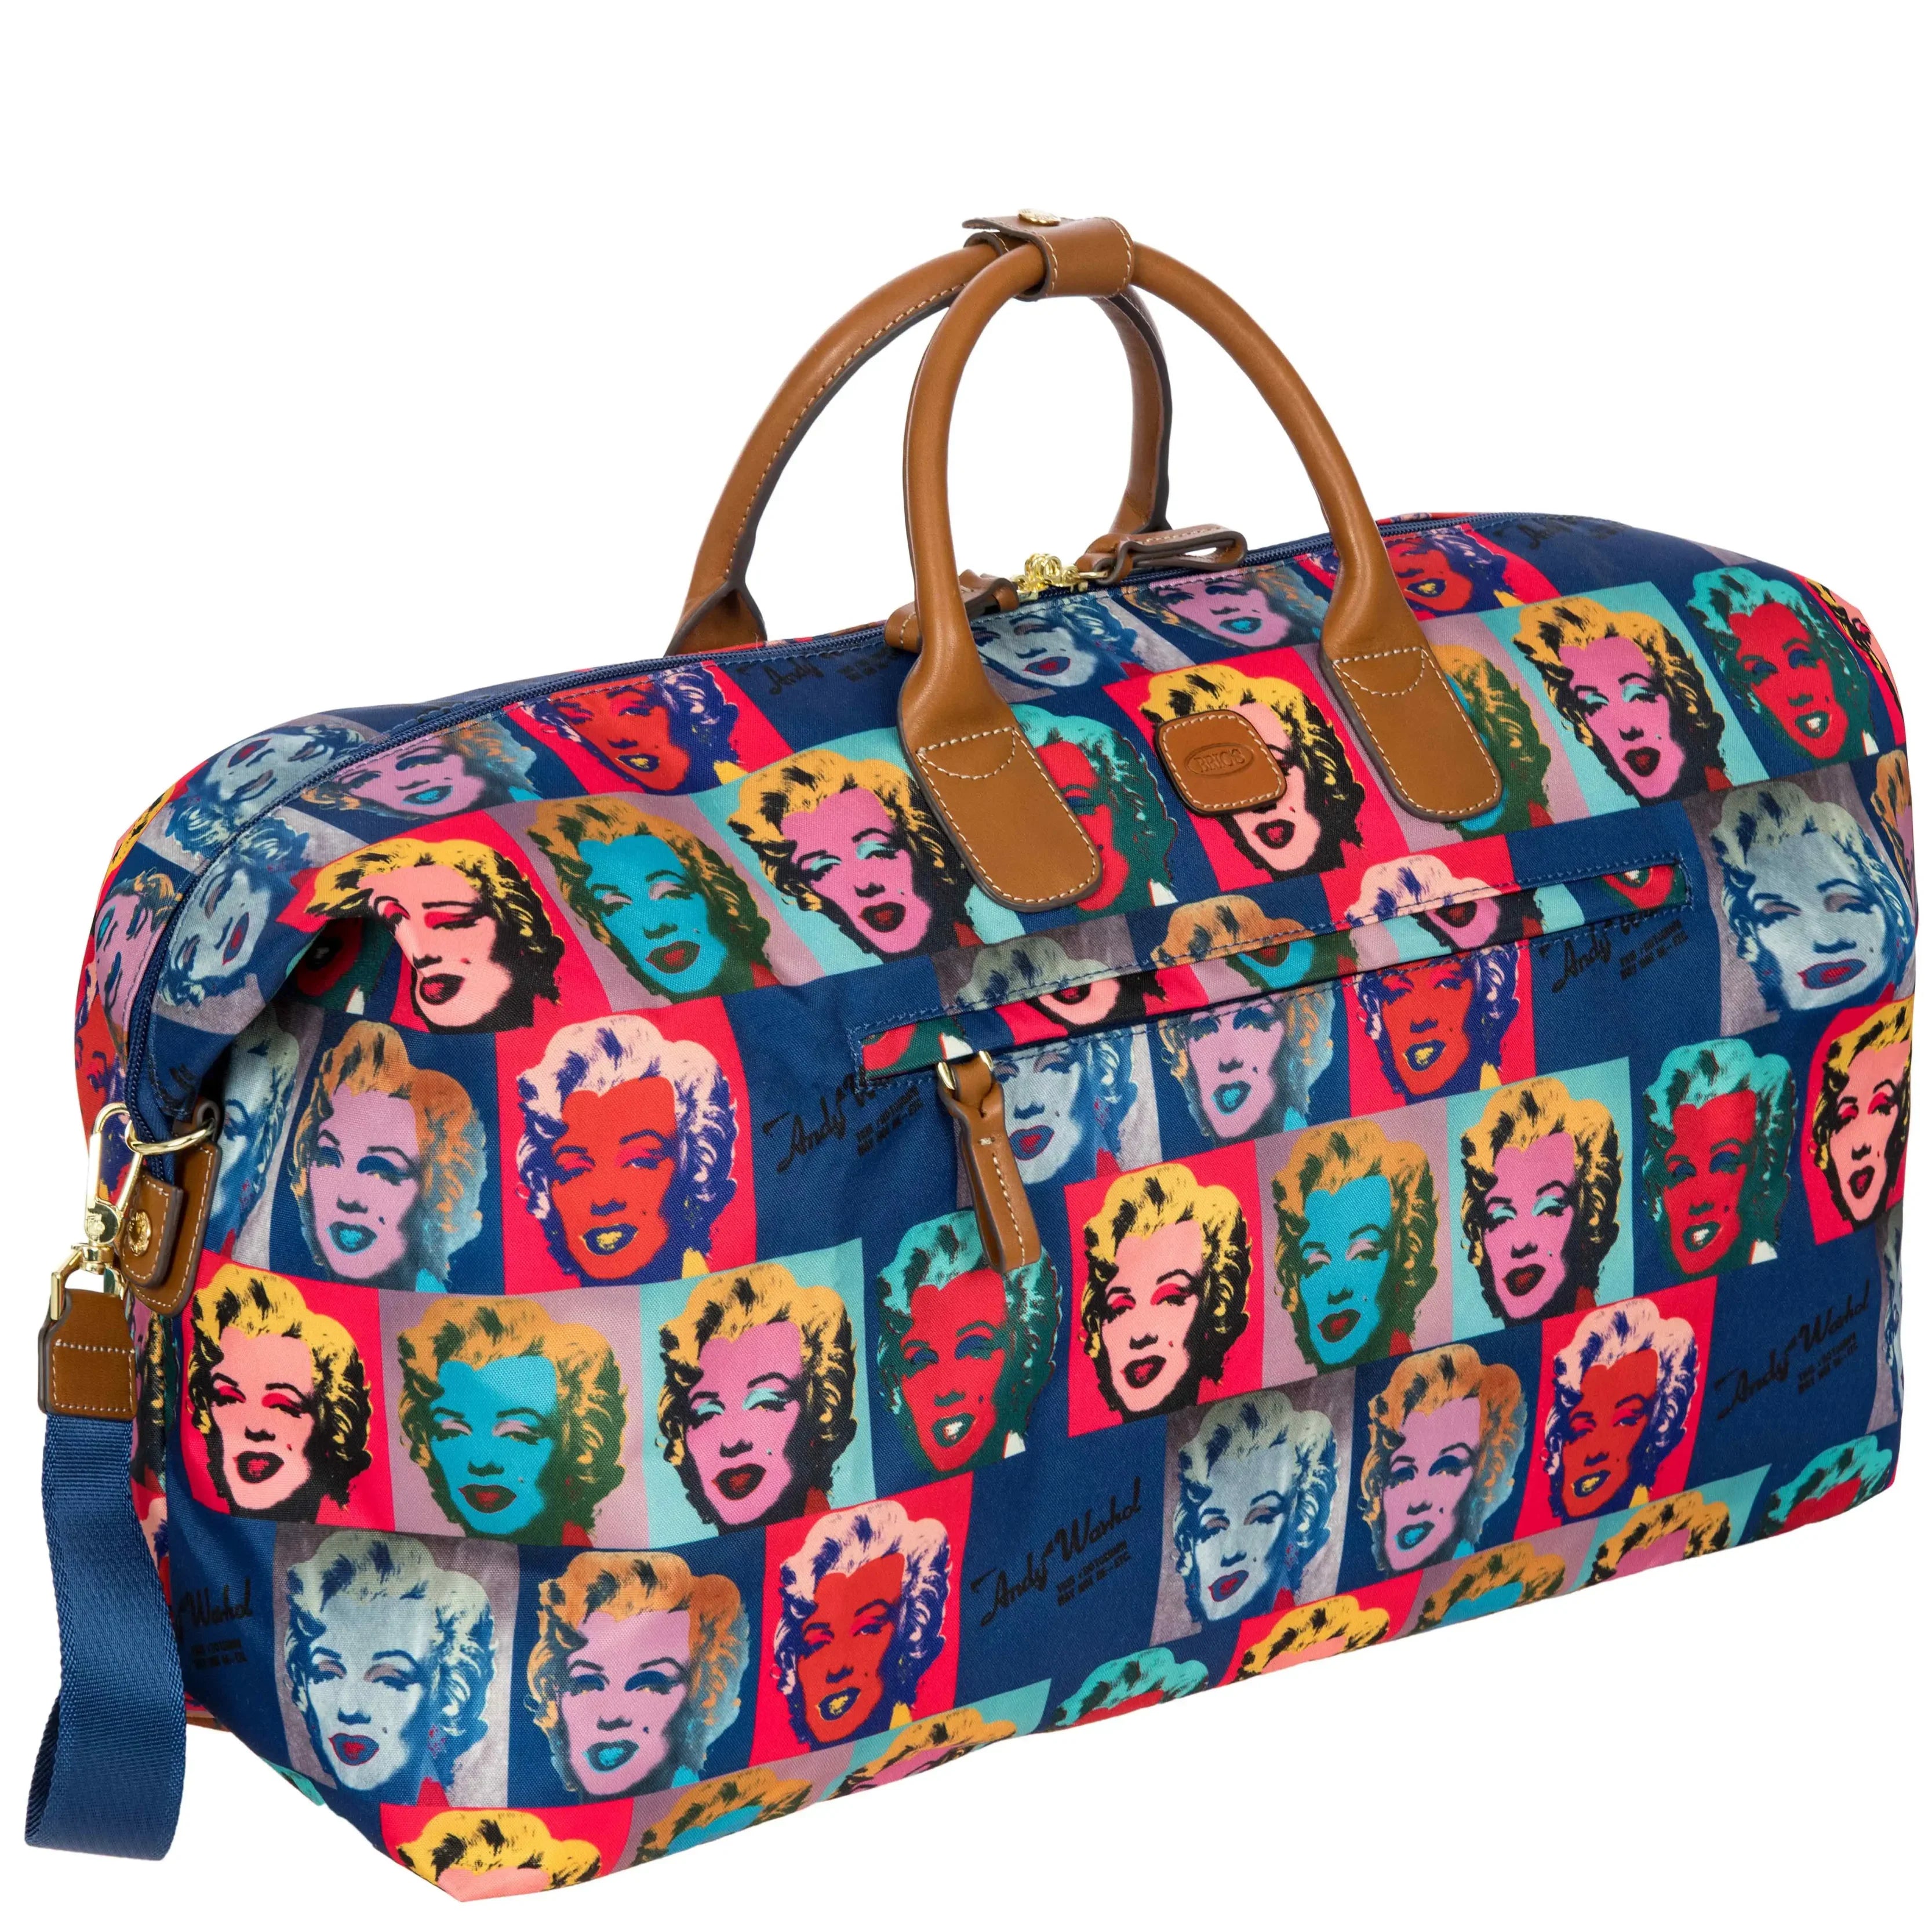 Brics Andy Warhol travel bag 55 cm - Marilyn